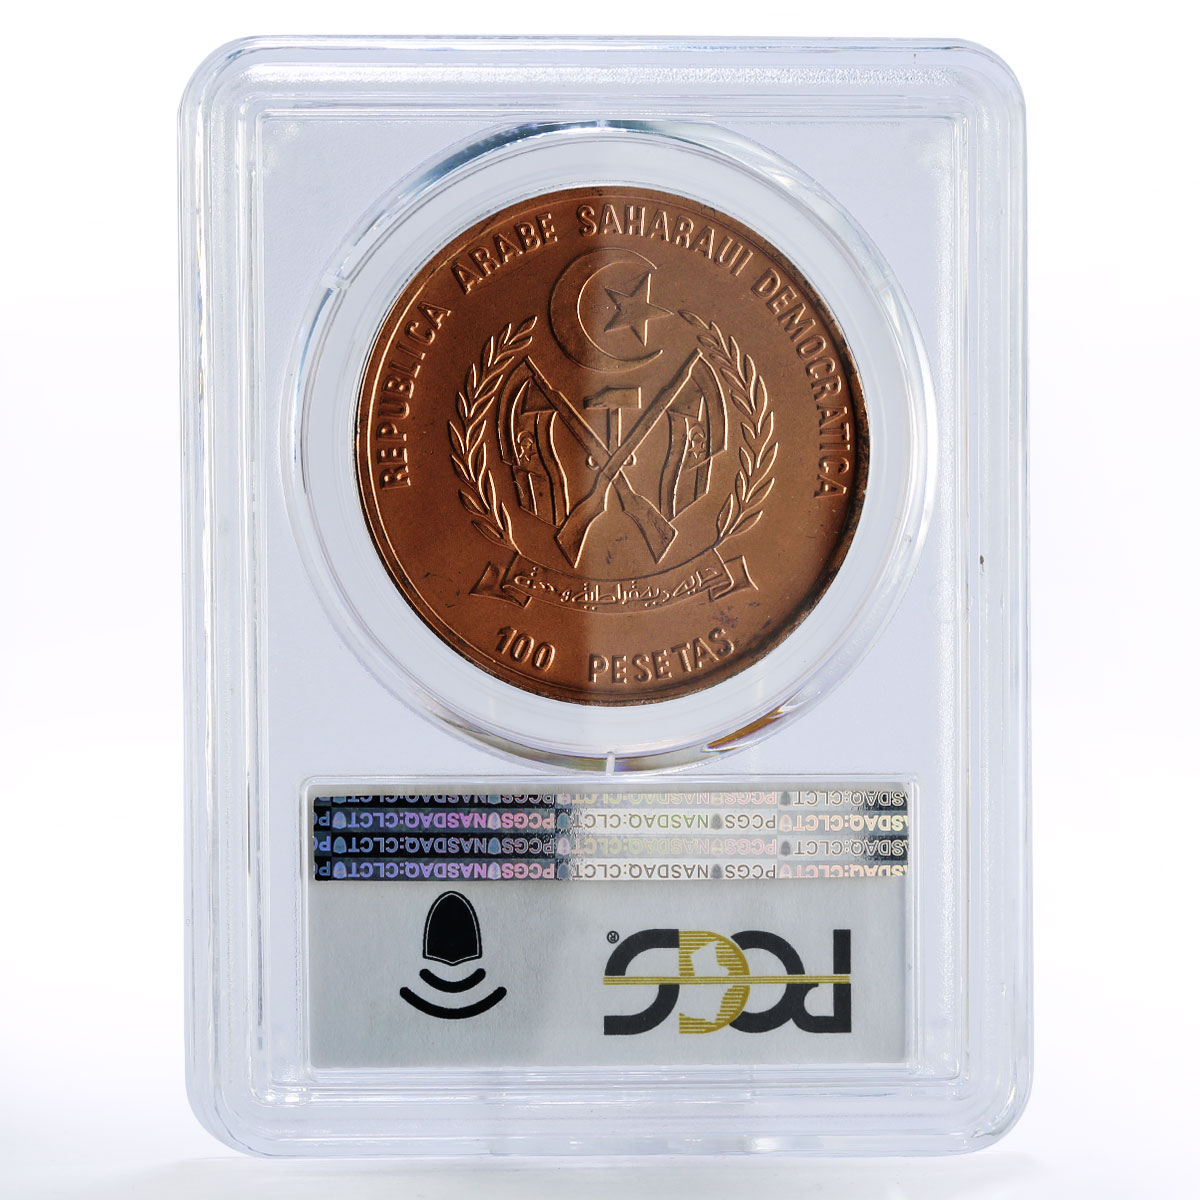 Sahrawi 100 pesetas Ancient Ship Clipper Arab Man MS68 PCGS copper coin 1990